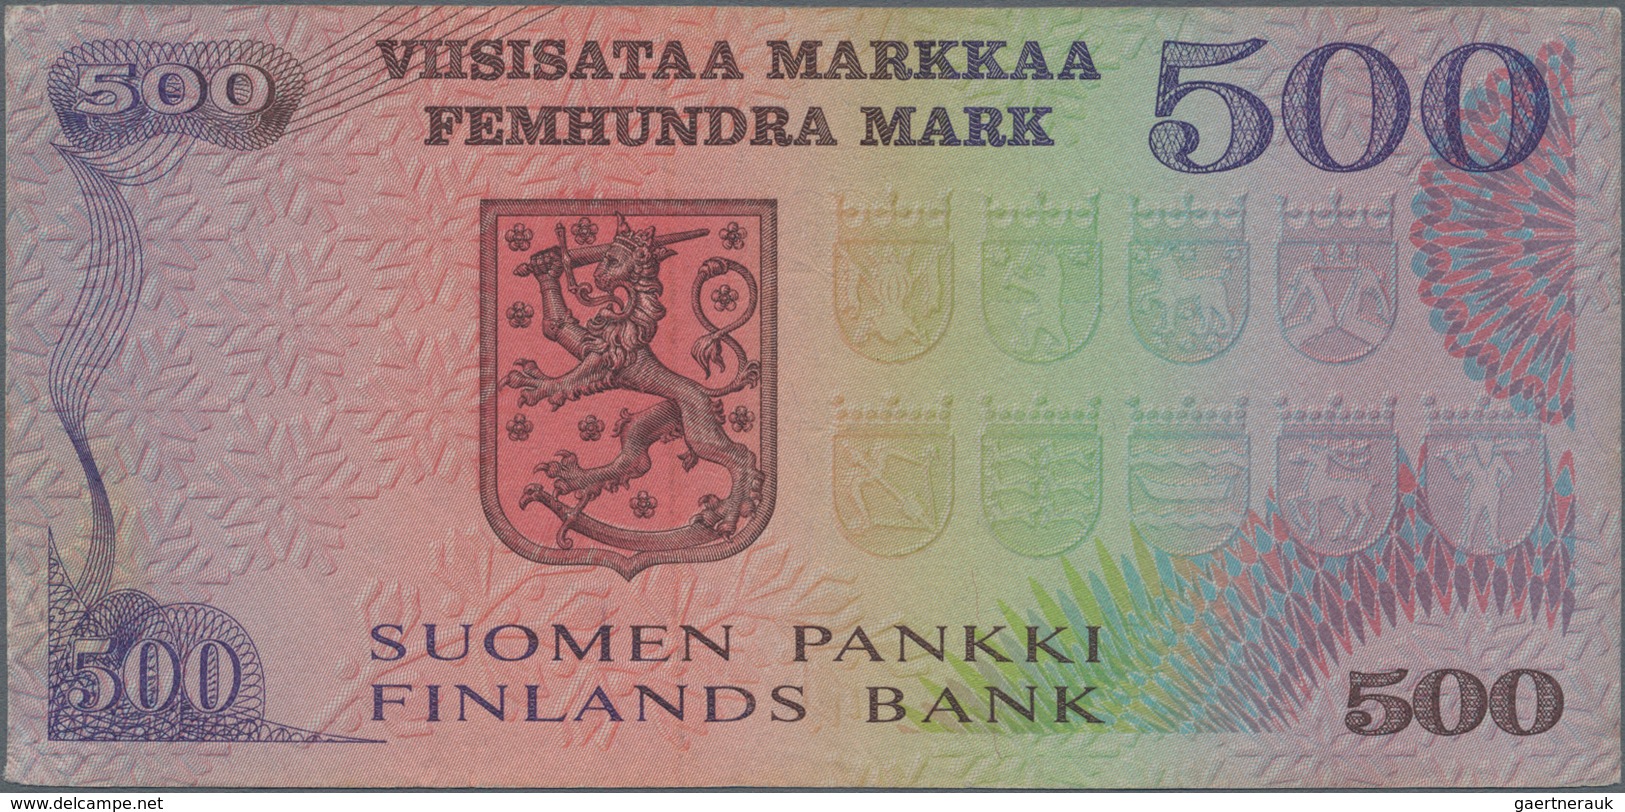 Finland / Finnland: Pair With 100 Markkaa 1945 Litt.B, P.88 (VF) And 500 Markkaa 1975 P.110 (VF). (2 - Finland